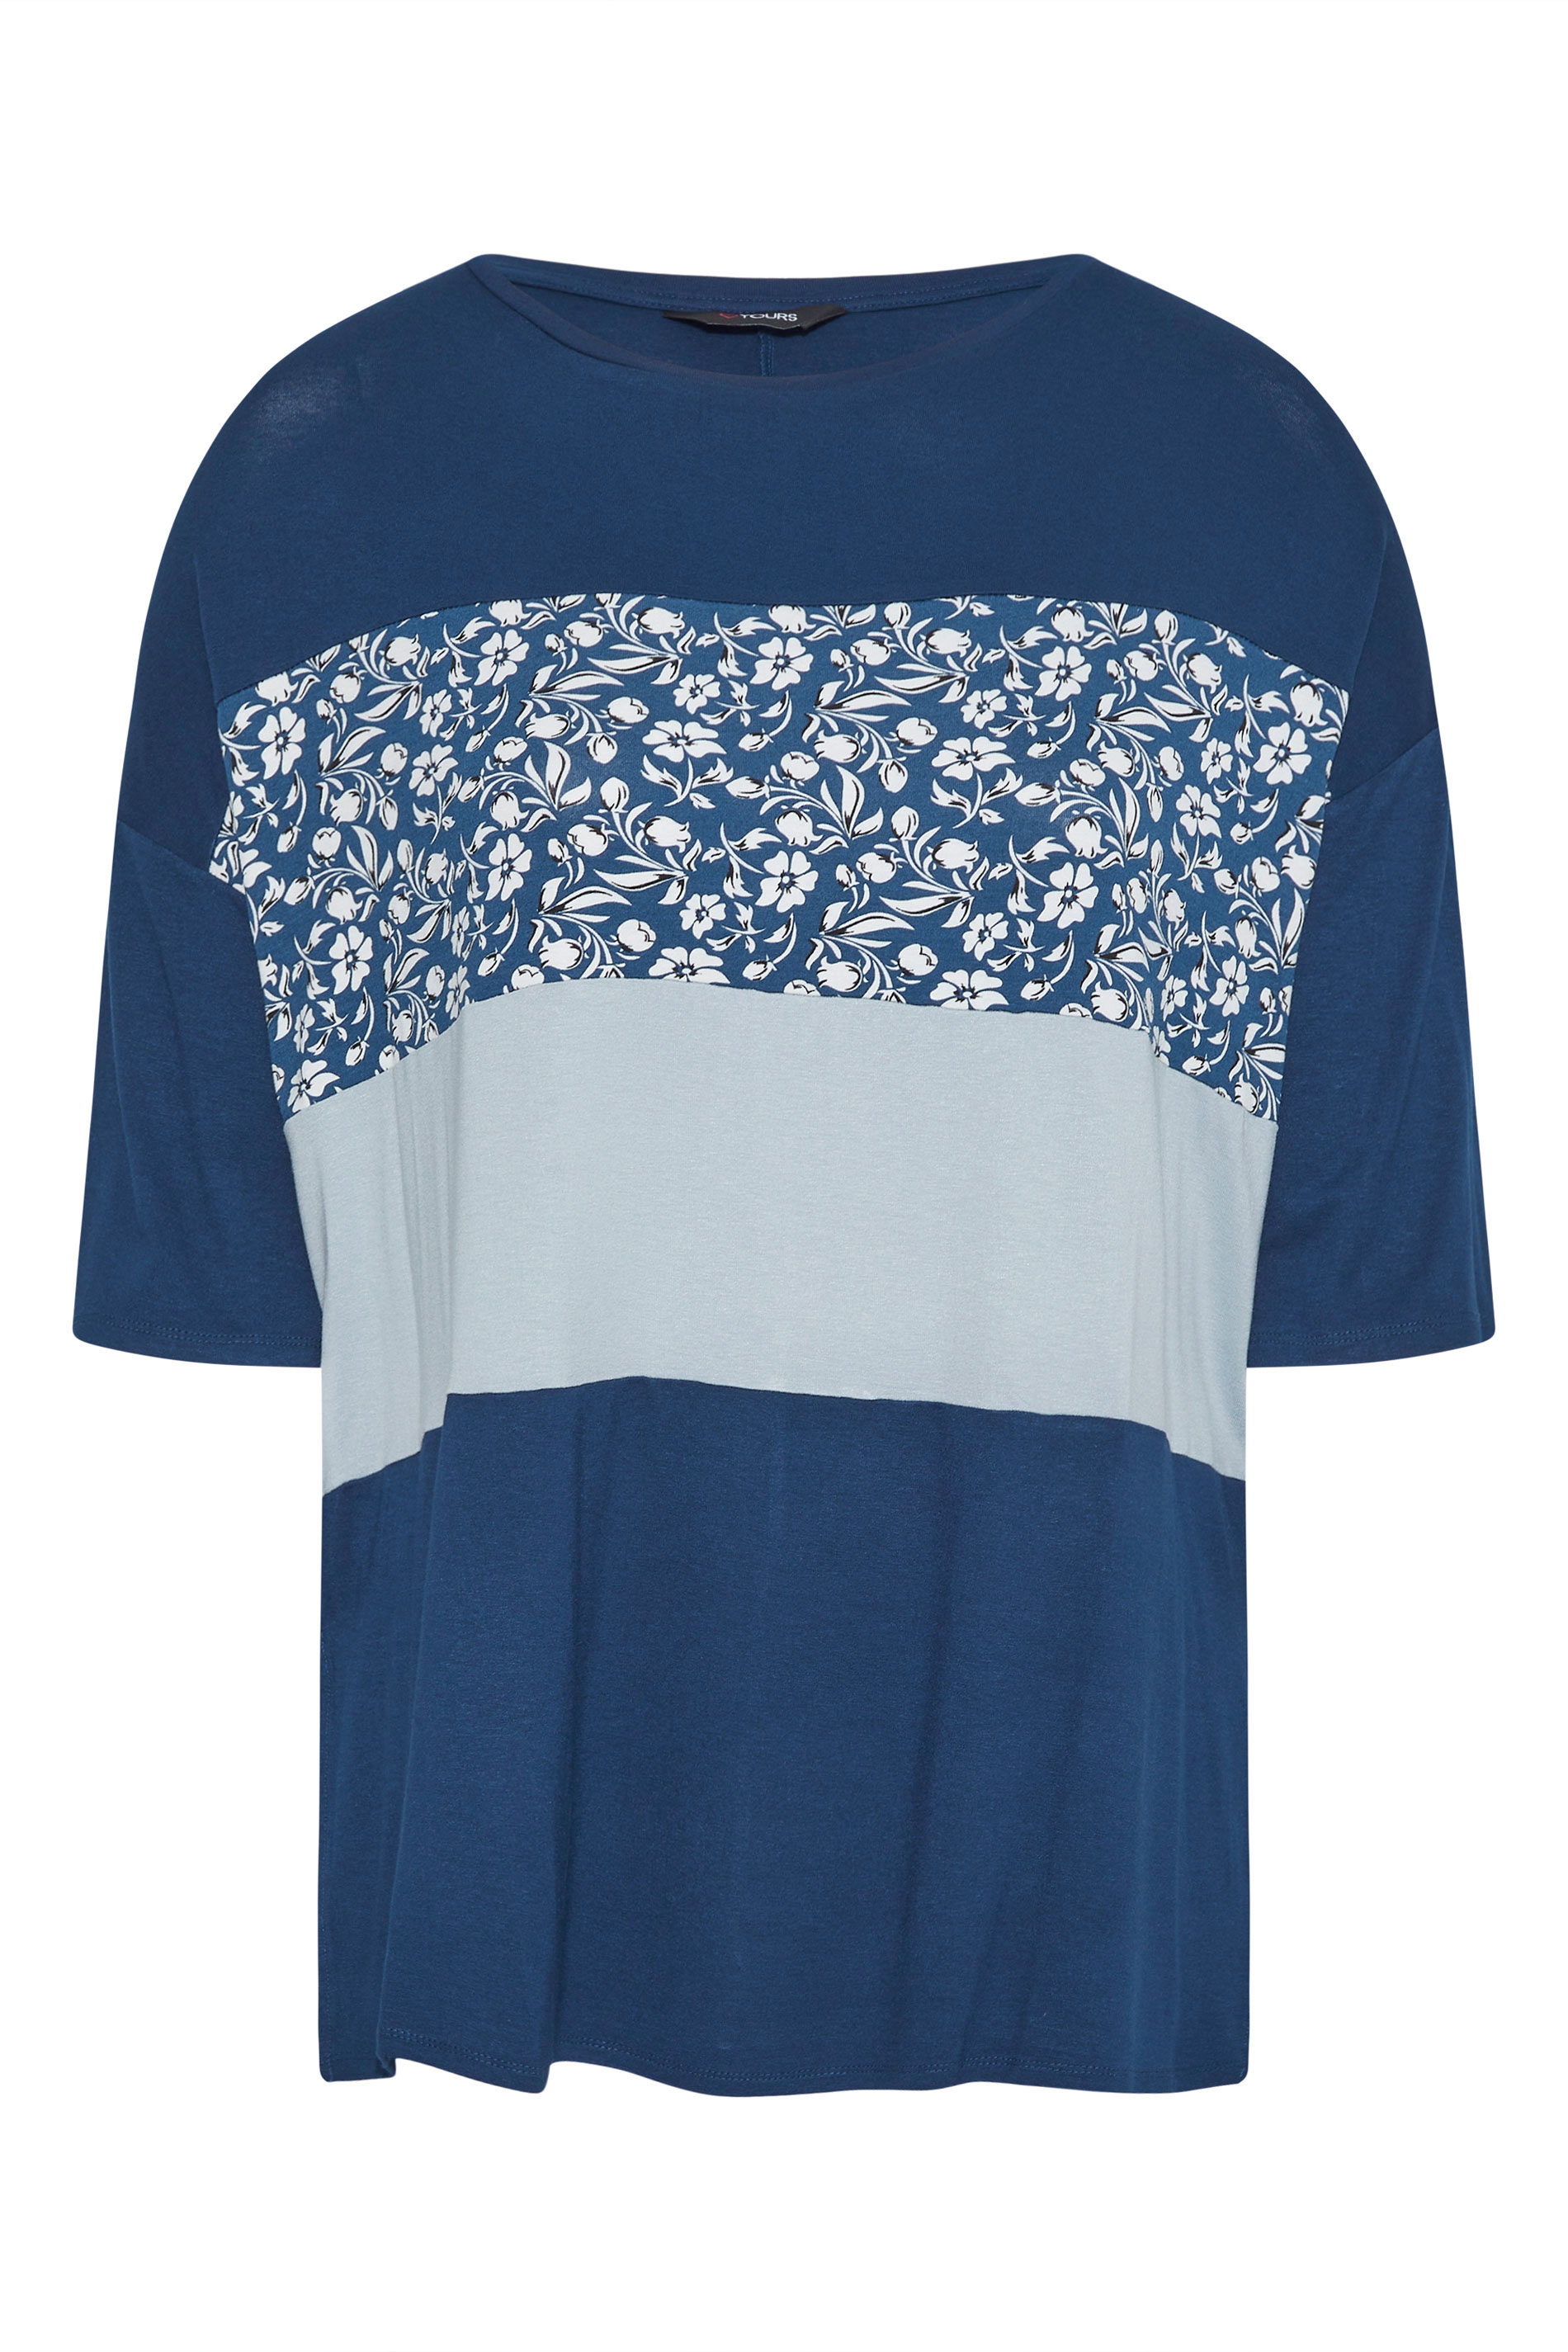 Grande taille  Tops Grande taille  Tops Casual | T-Shirt Bleu Imprimé Floral Block de Couleur - RV82820